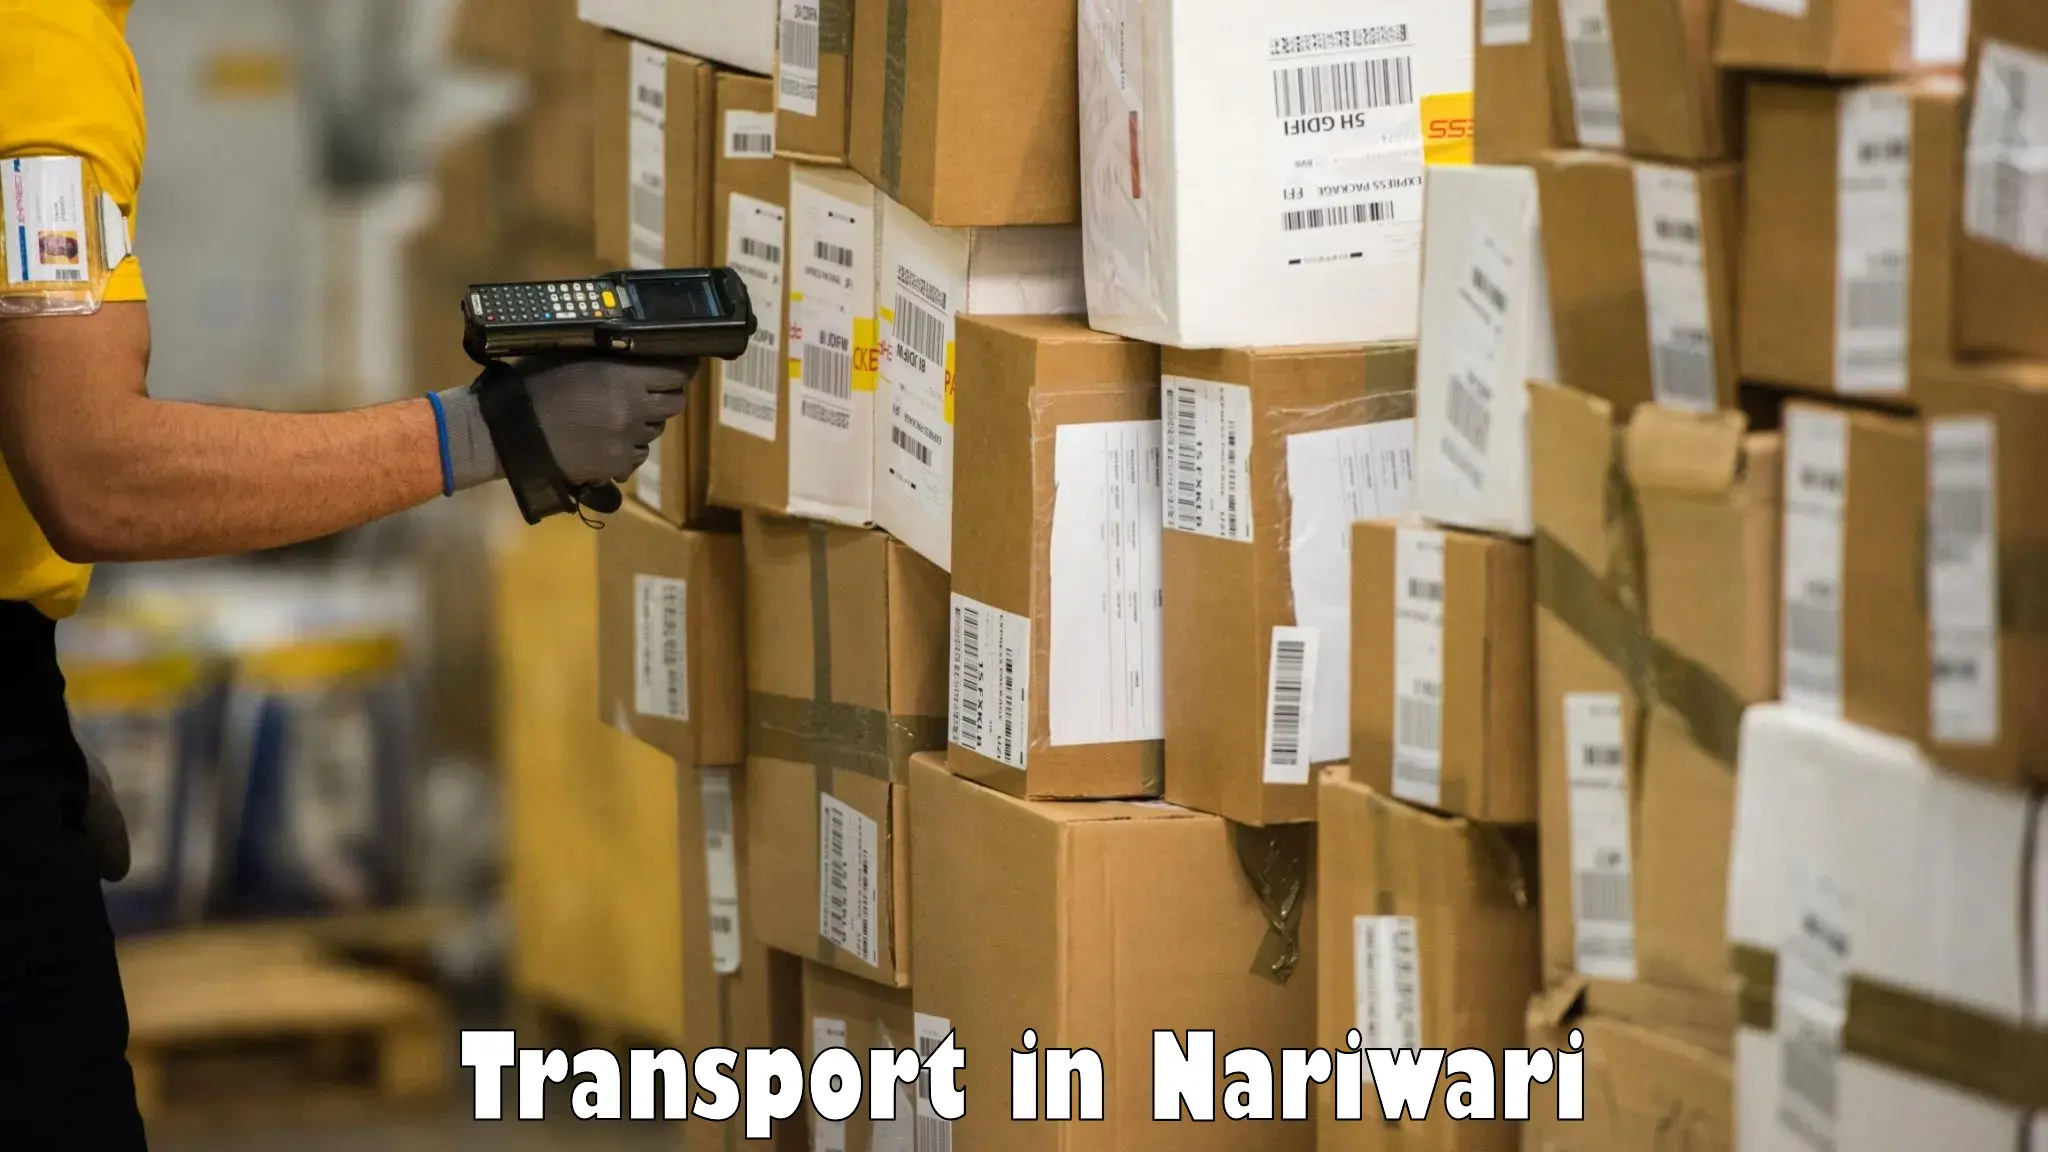 Vehicle transport services in Nariwari